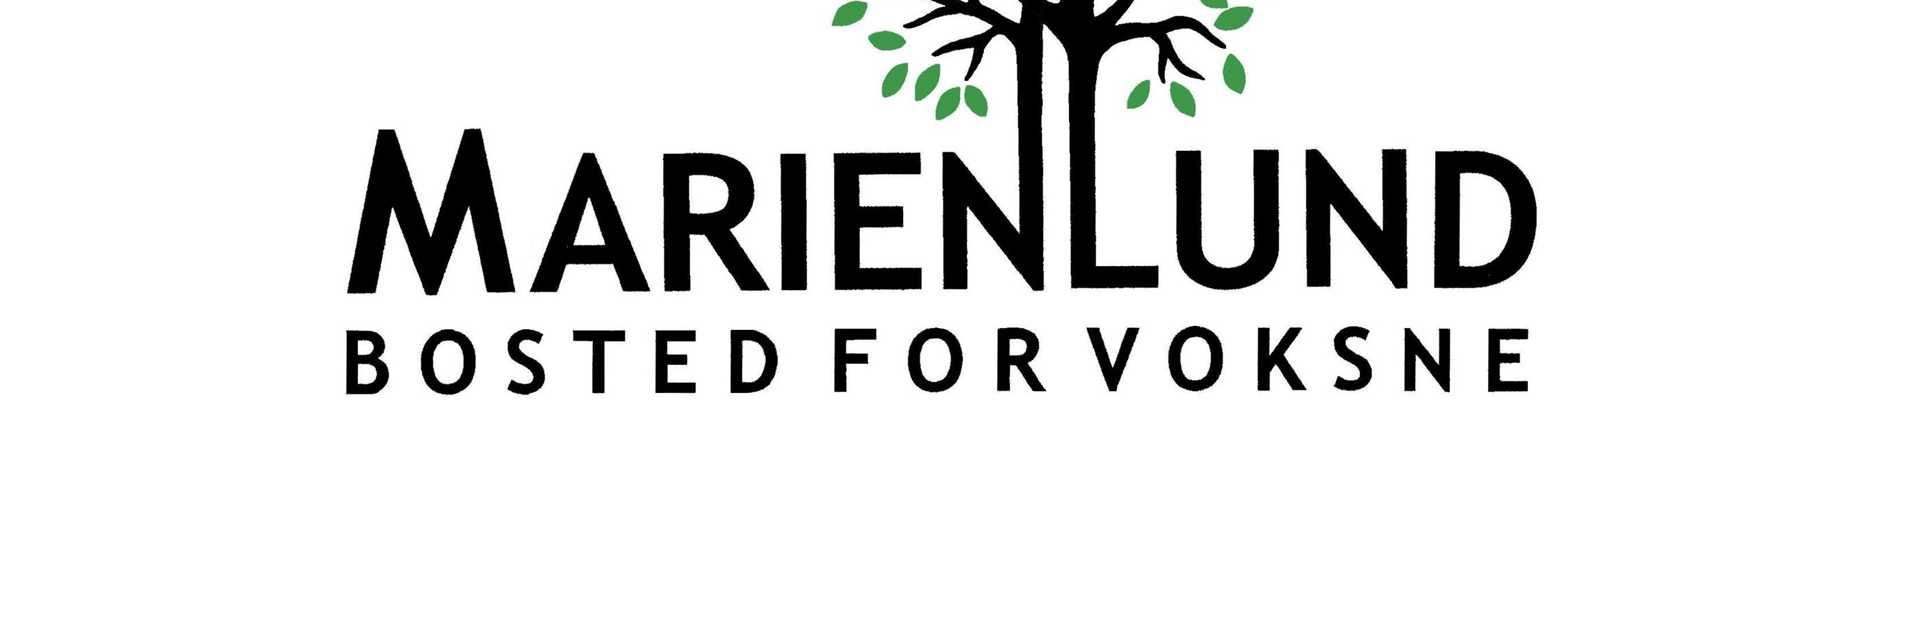 Marienlund logo